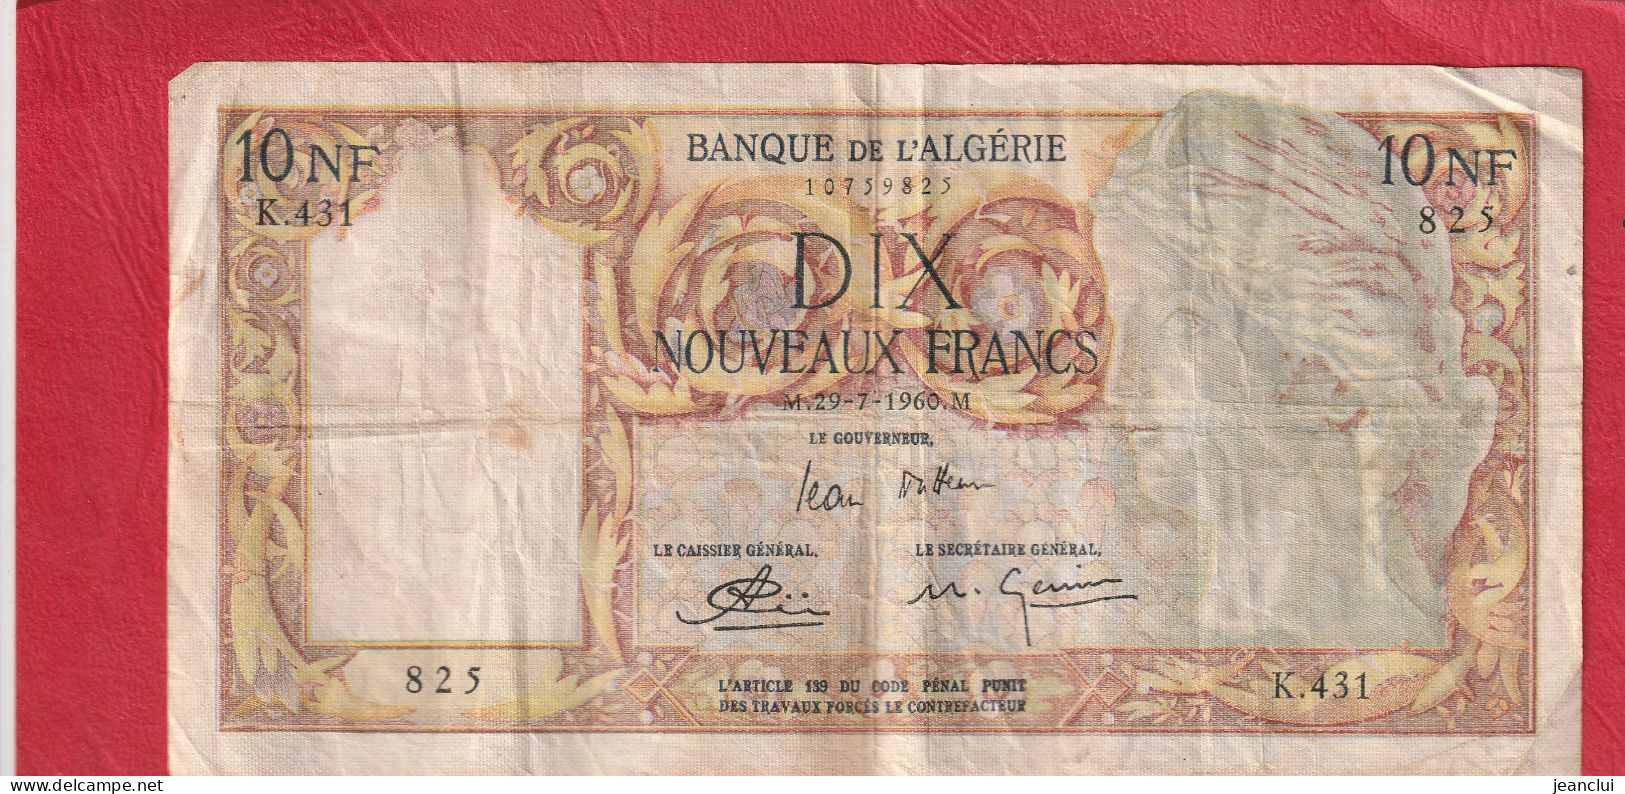 BANQUE DE L'ALGERIE  .  10 NOUVEAUX FRANCS  .  29-7-1960  . SERIE K.431  .  N° 825  .  2 SCANNES  .  BILLET USITE - Algerije